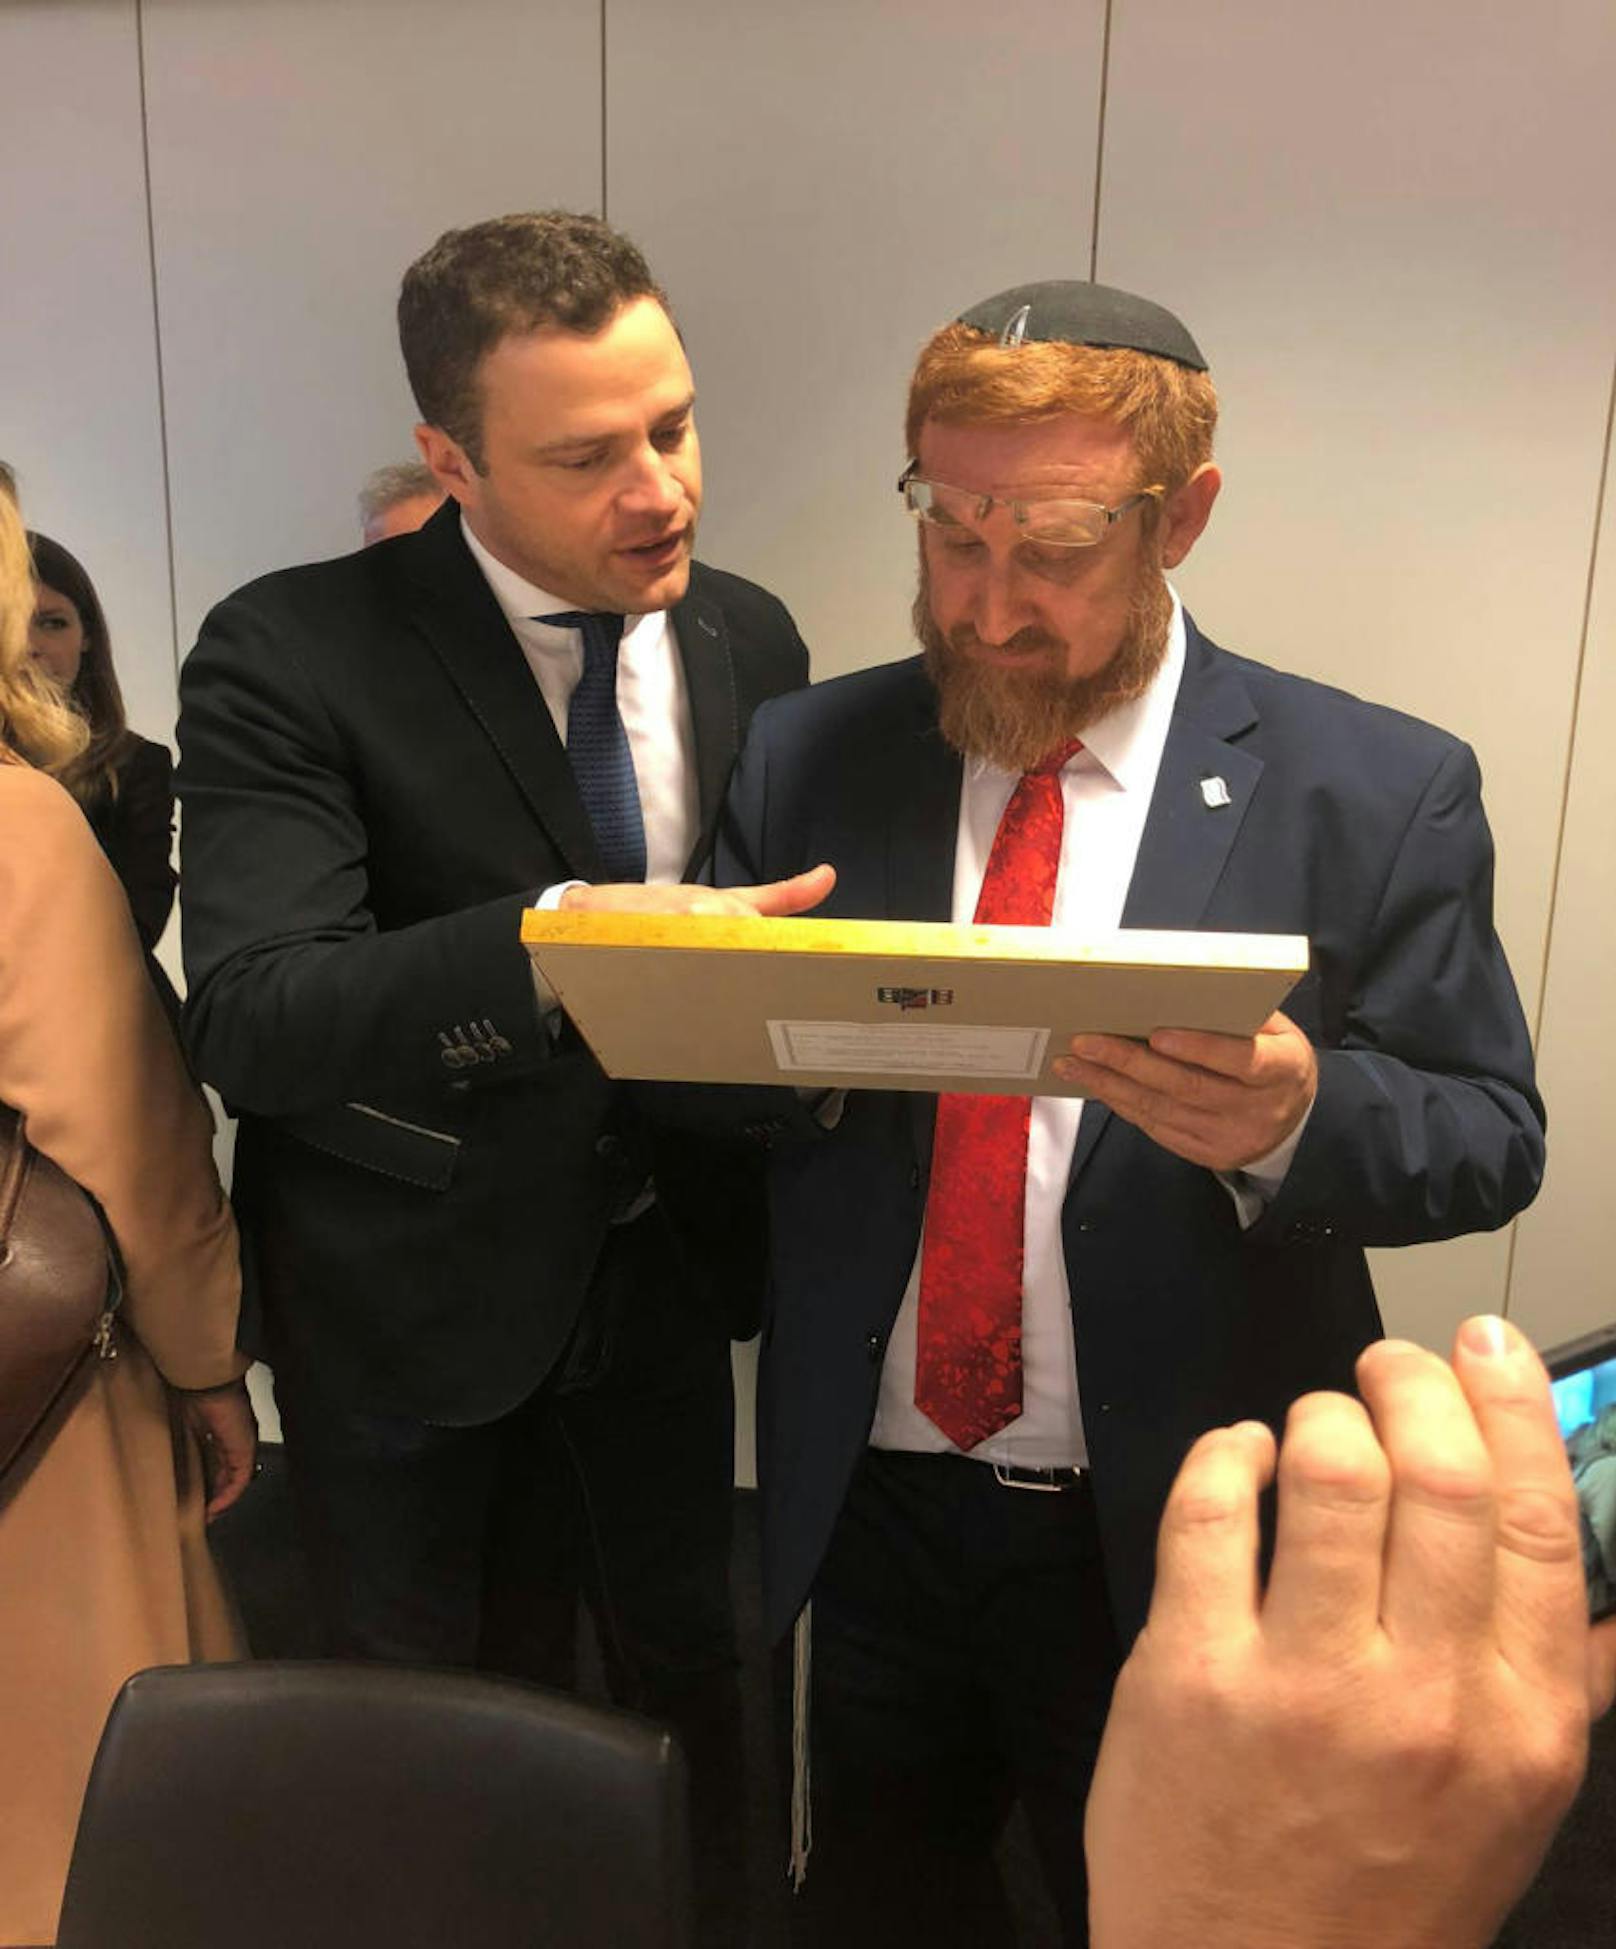 "Wir hatten die Gelegenheit zu einem intensiven Arbeitsgespräch, bei dem Rabbi Glick betonte, dass er sich für die Wiederaufnahme bilateraler Gespräche zwischen Israel und Österreich weiterhin einsetzen werde", so Gudenus.